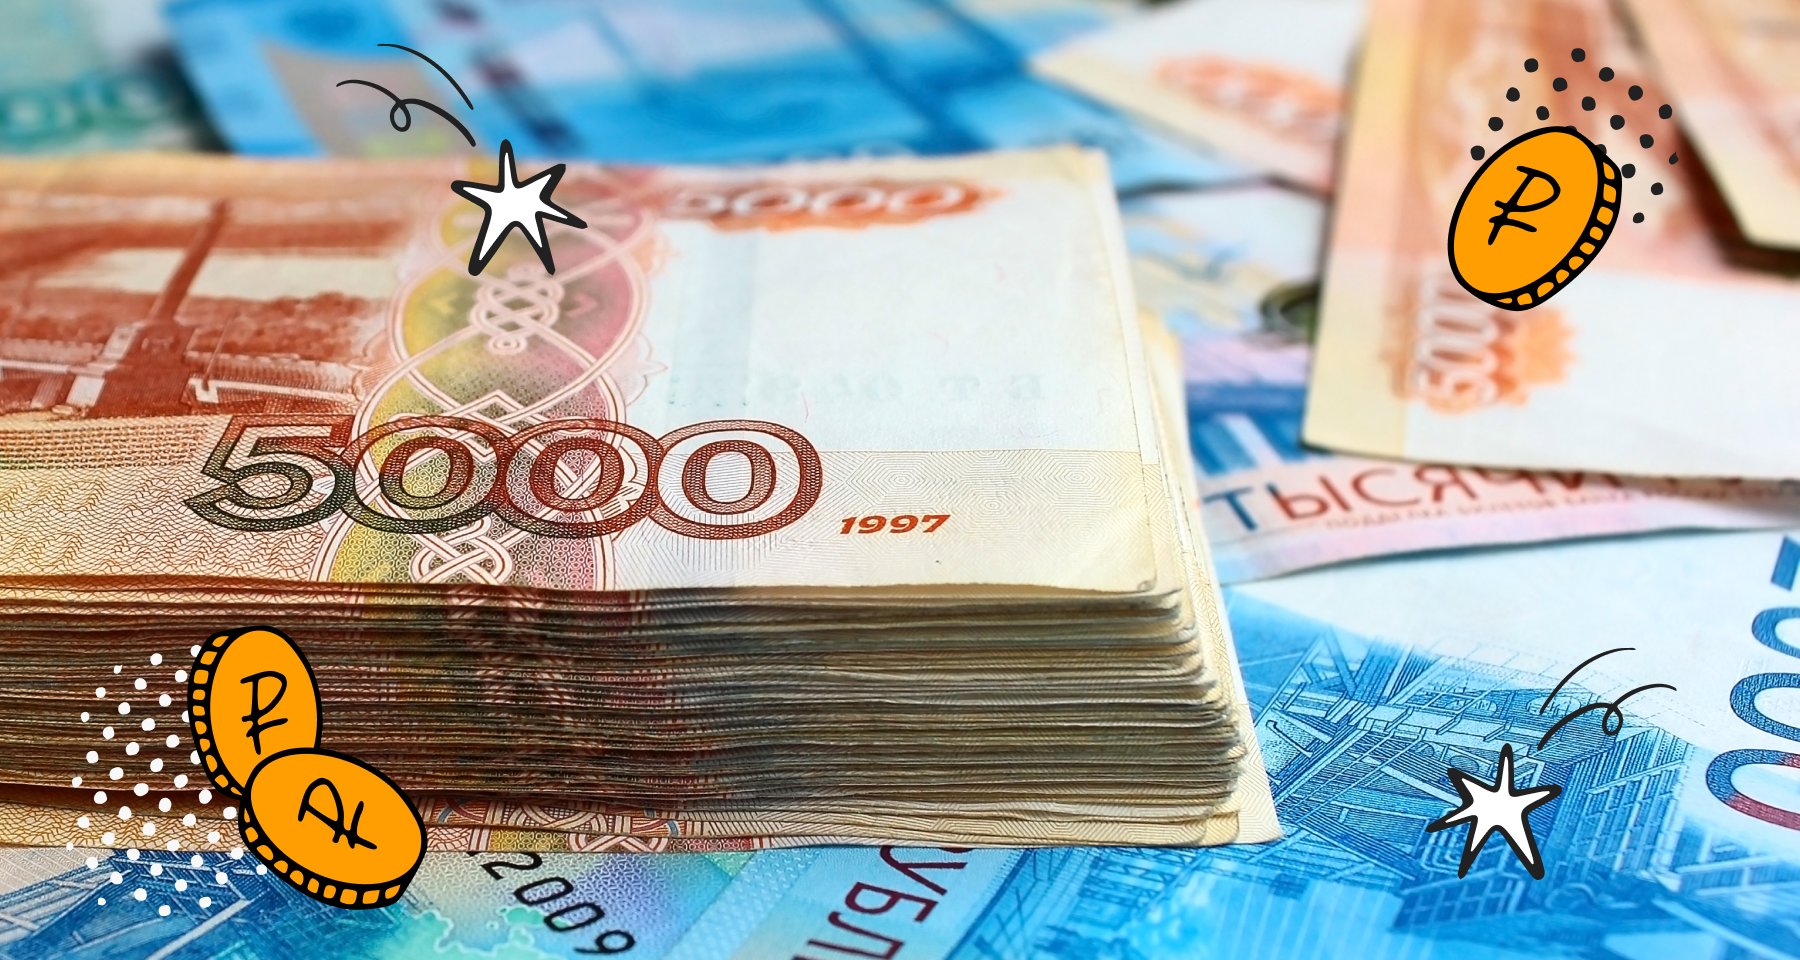 Спрос на краткосрочные вклады растет второй месяц подряд: исследование Банки.ру